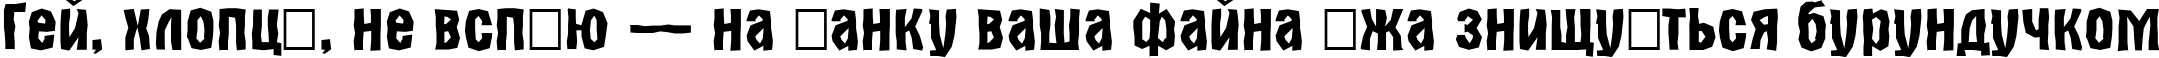 Пример написания шрифтом a_AlternaBrk текста на украинском